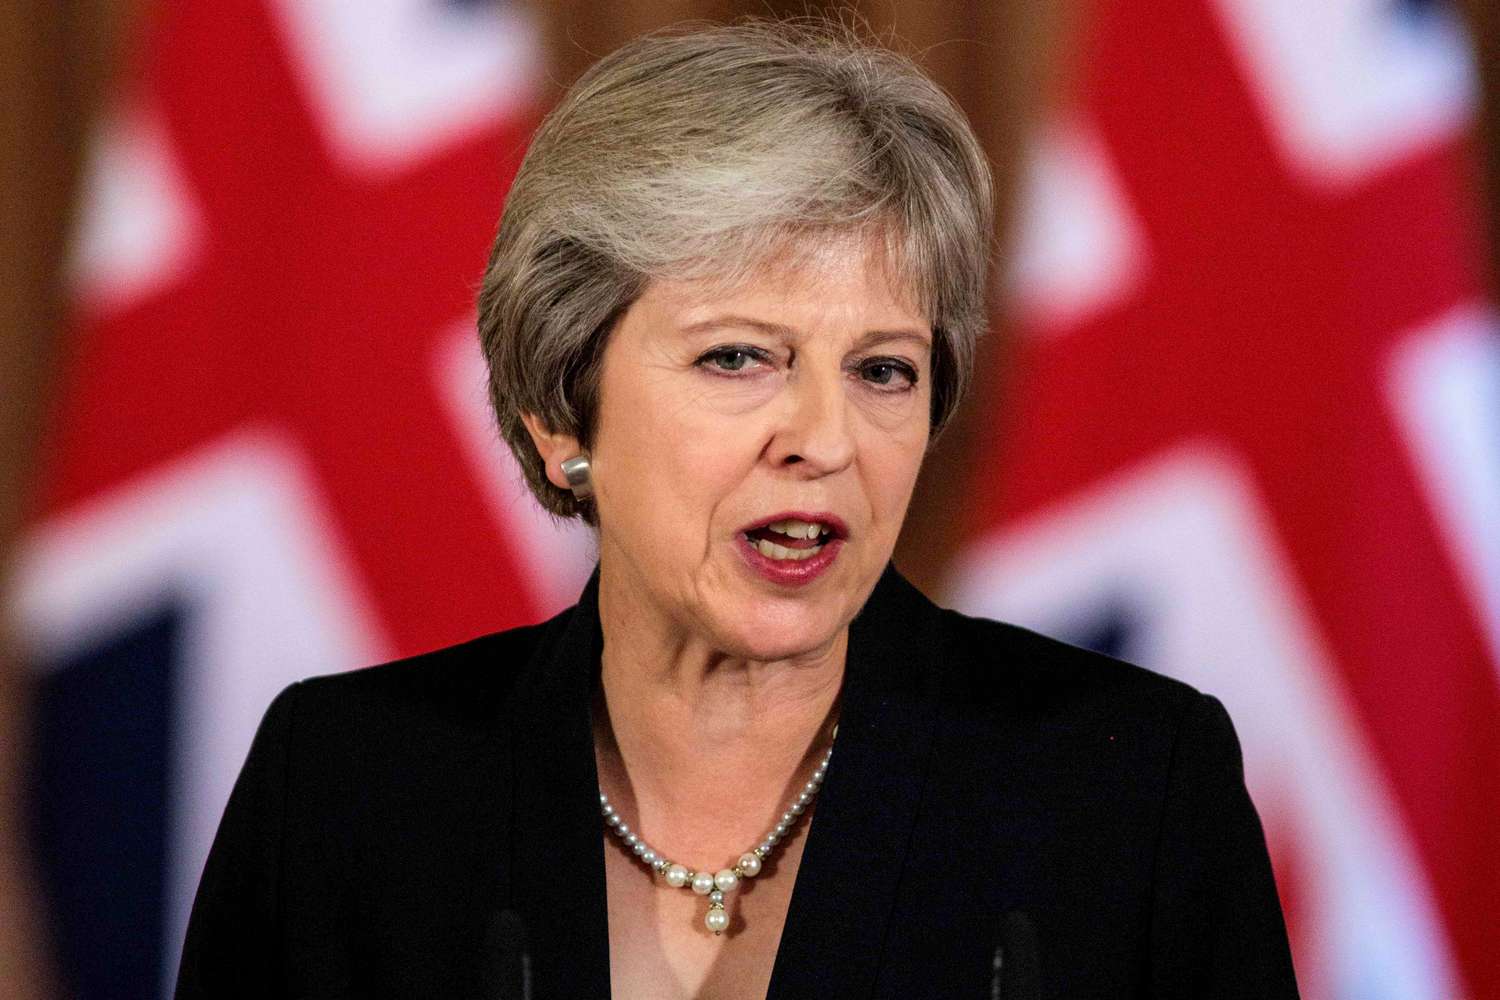 El gobierno británico advirtió sobre posibles actos terroristas